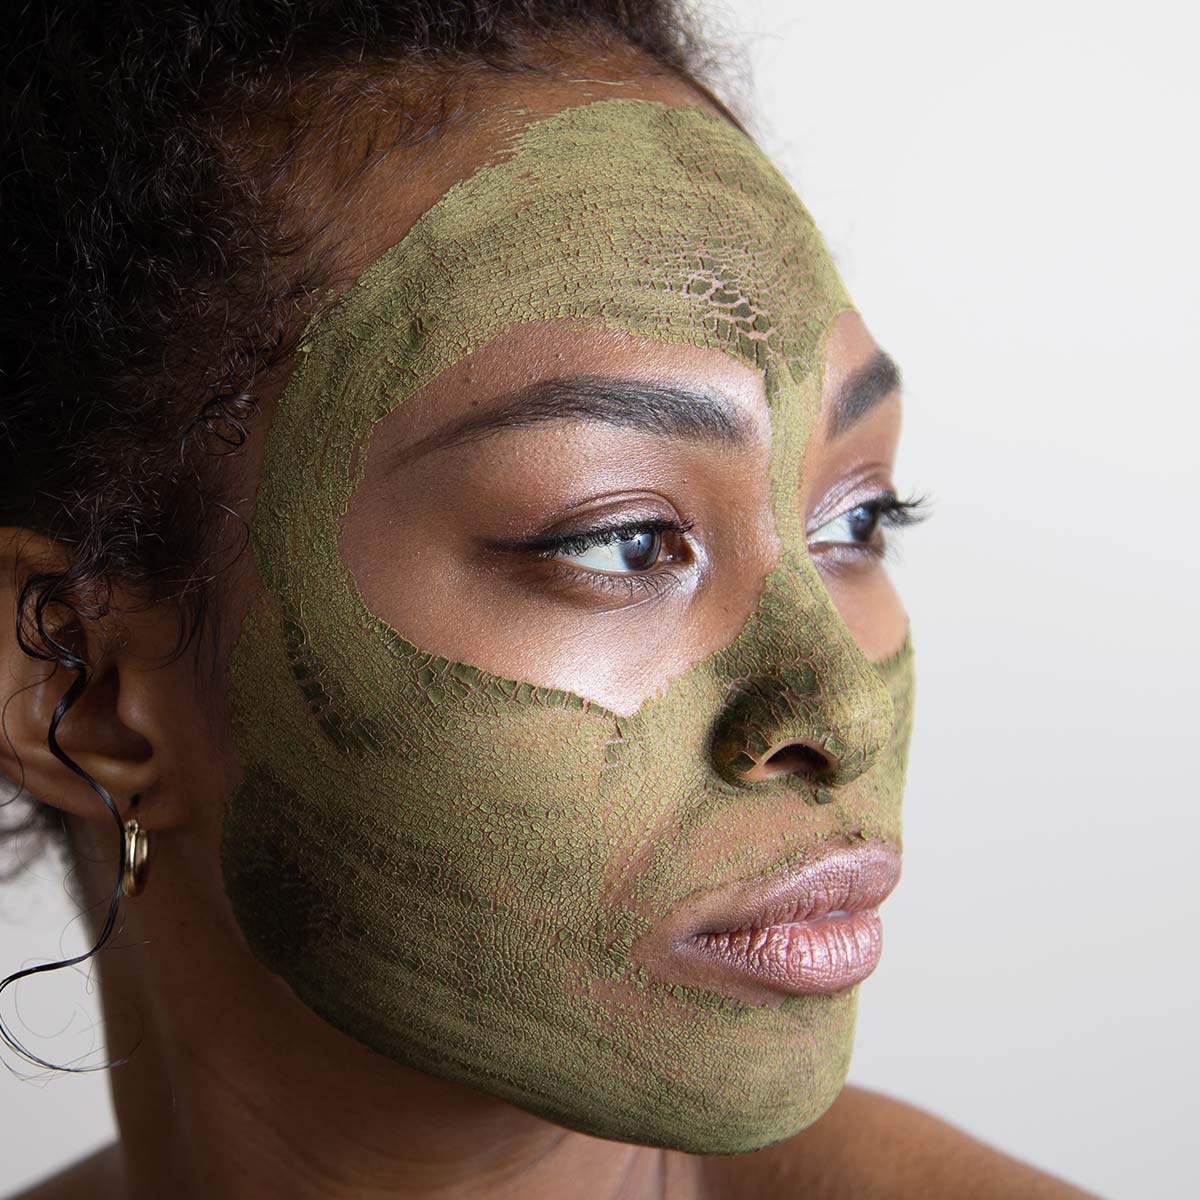 Green Tea Clay Face Mask